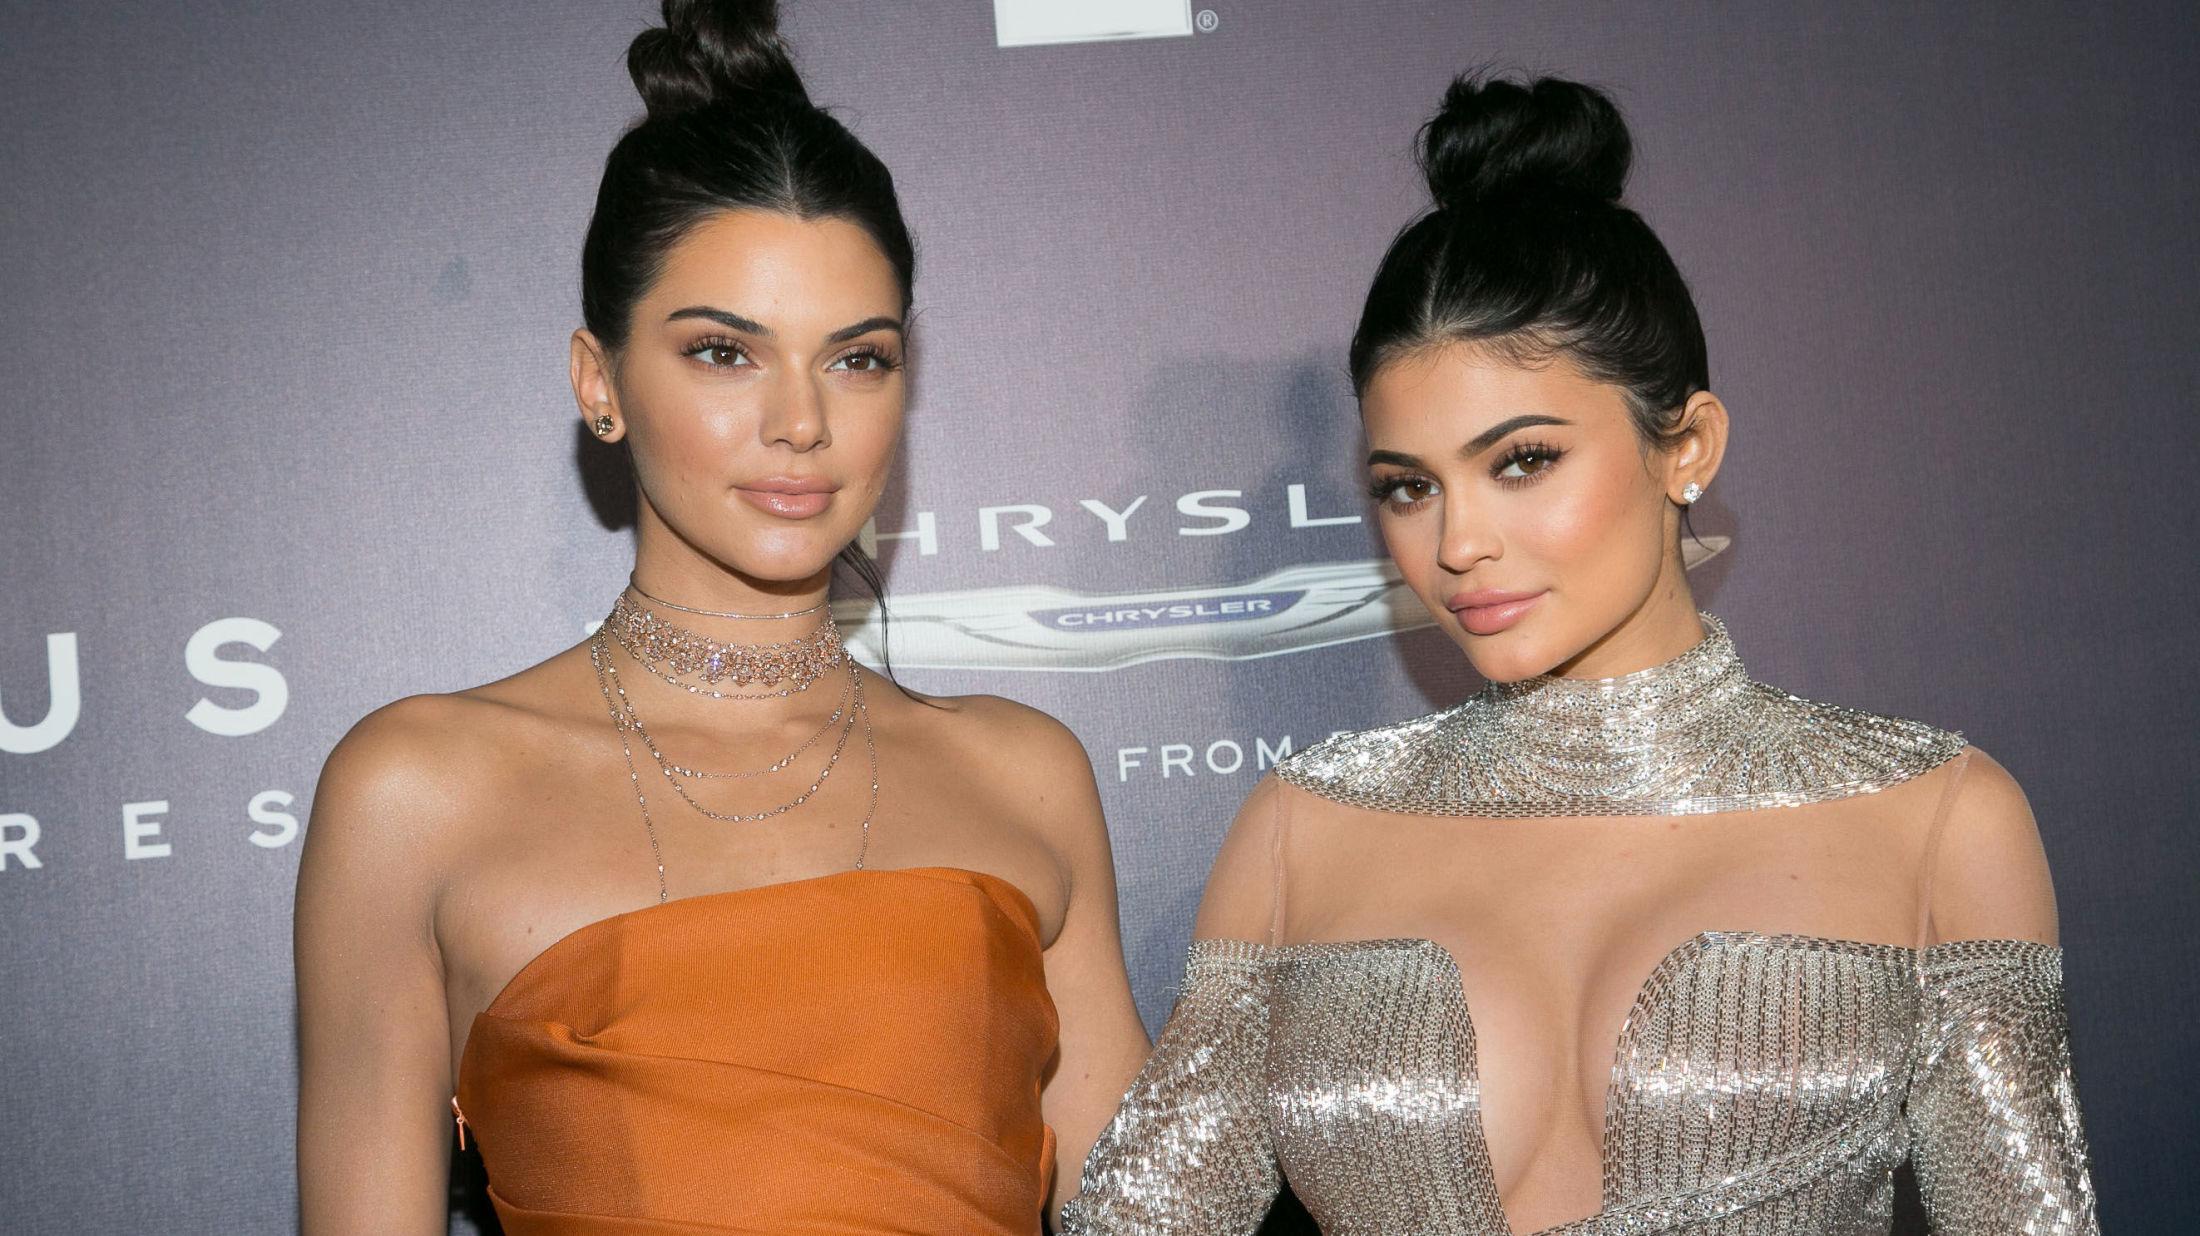 SØSTRENE SISTERS: Kendall og Kylie Jenner var ikke tilstede på selve Golden Globe-utdelingen, men tok igjen for tapt oppmerksomhet på etterfesten. Foto: Getty Images